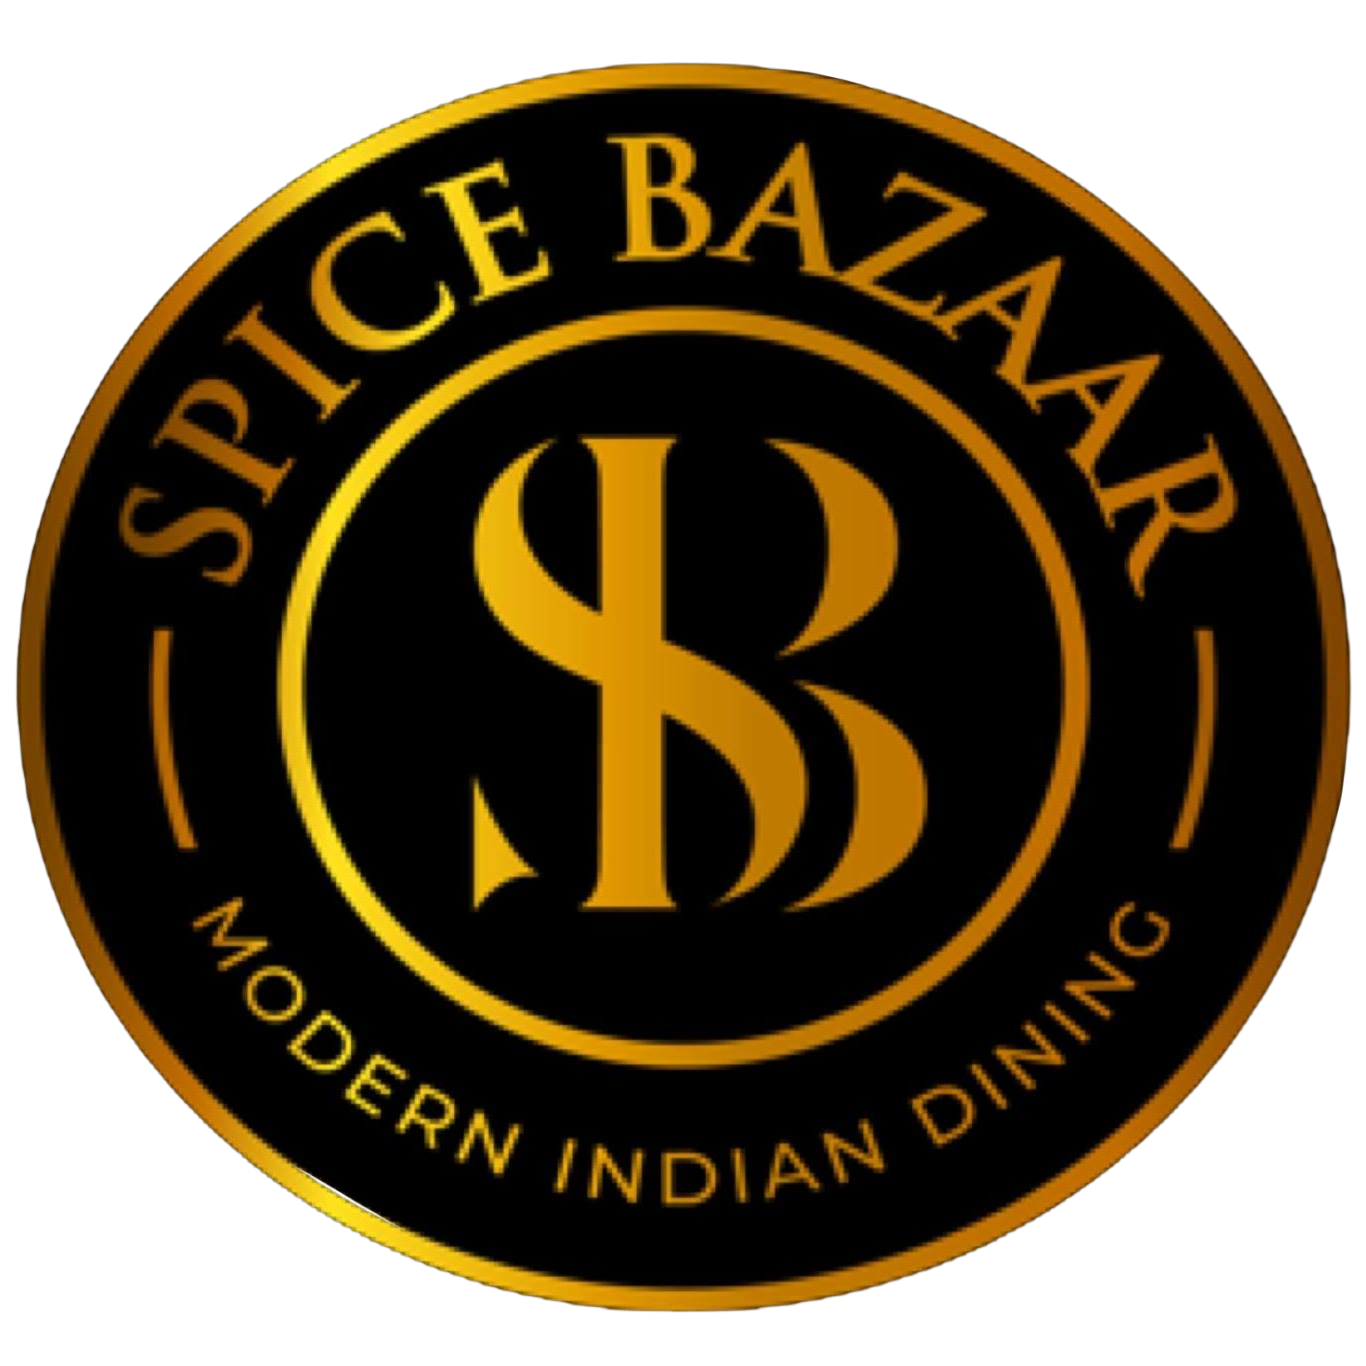 Spice Bazaar: Pioneering the New Era of Indian Cuisine in New Jersey